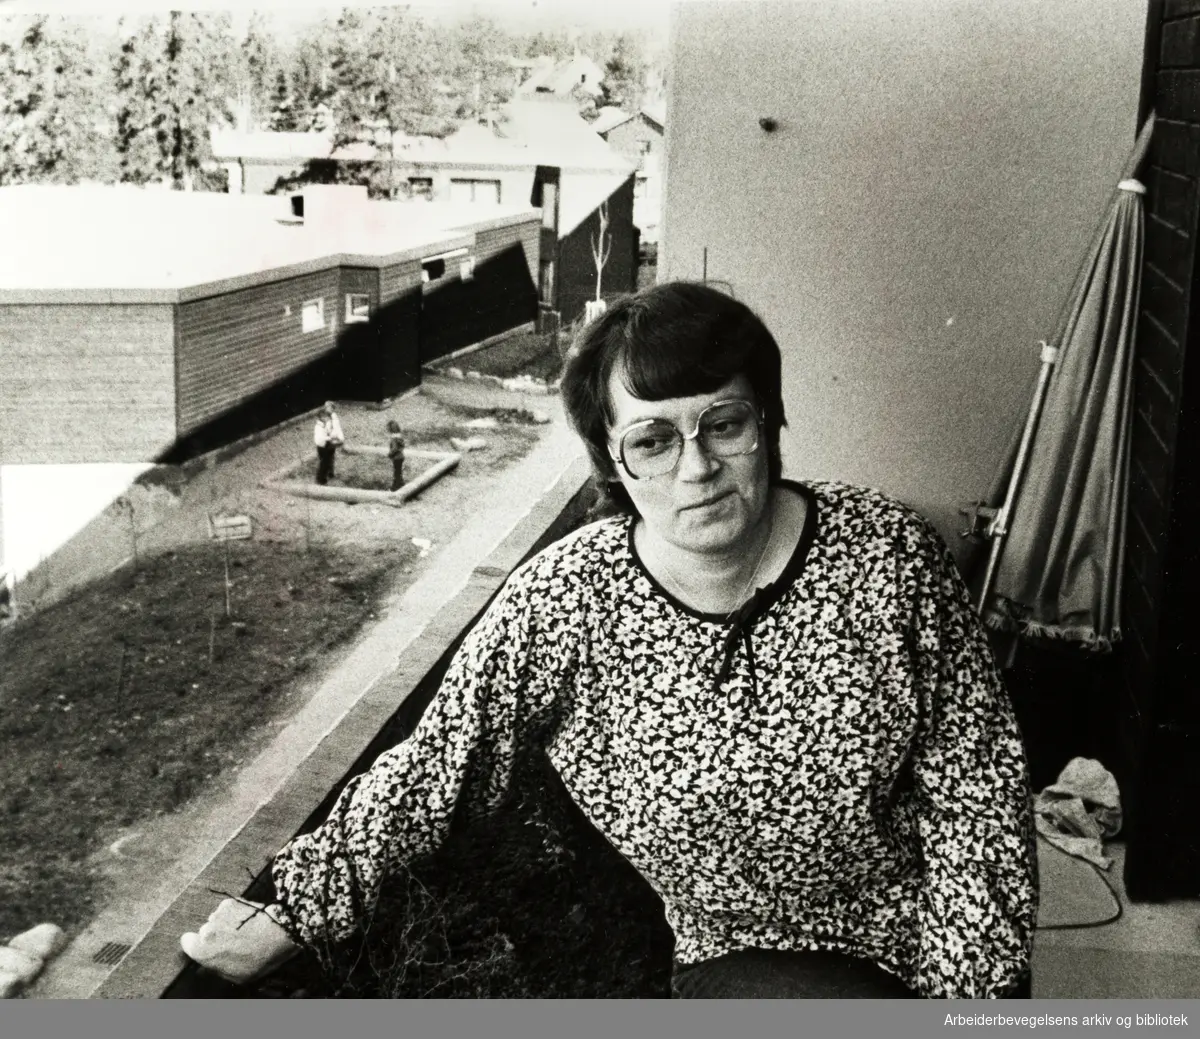 Høybråten. Det er viktig med barnehage og lekemuligheter i et så nytt boligområde, synes Ellen Olsen. April 1980